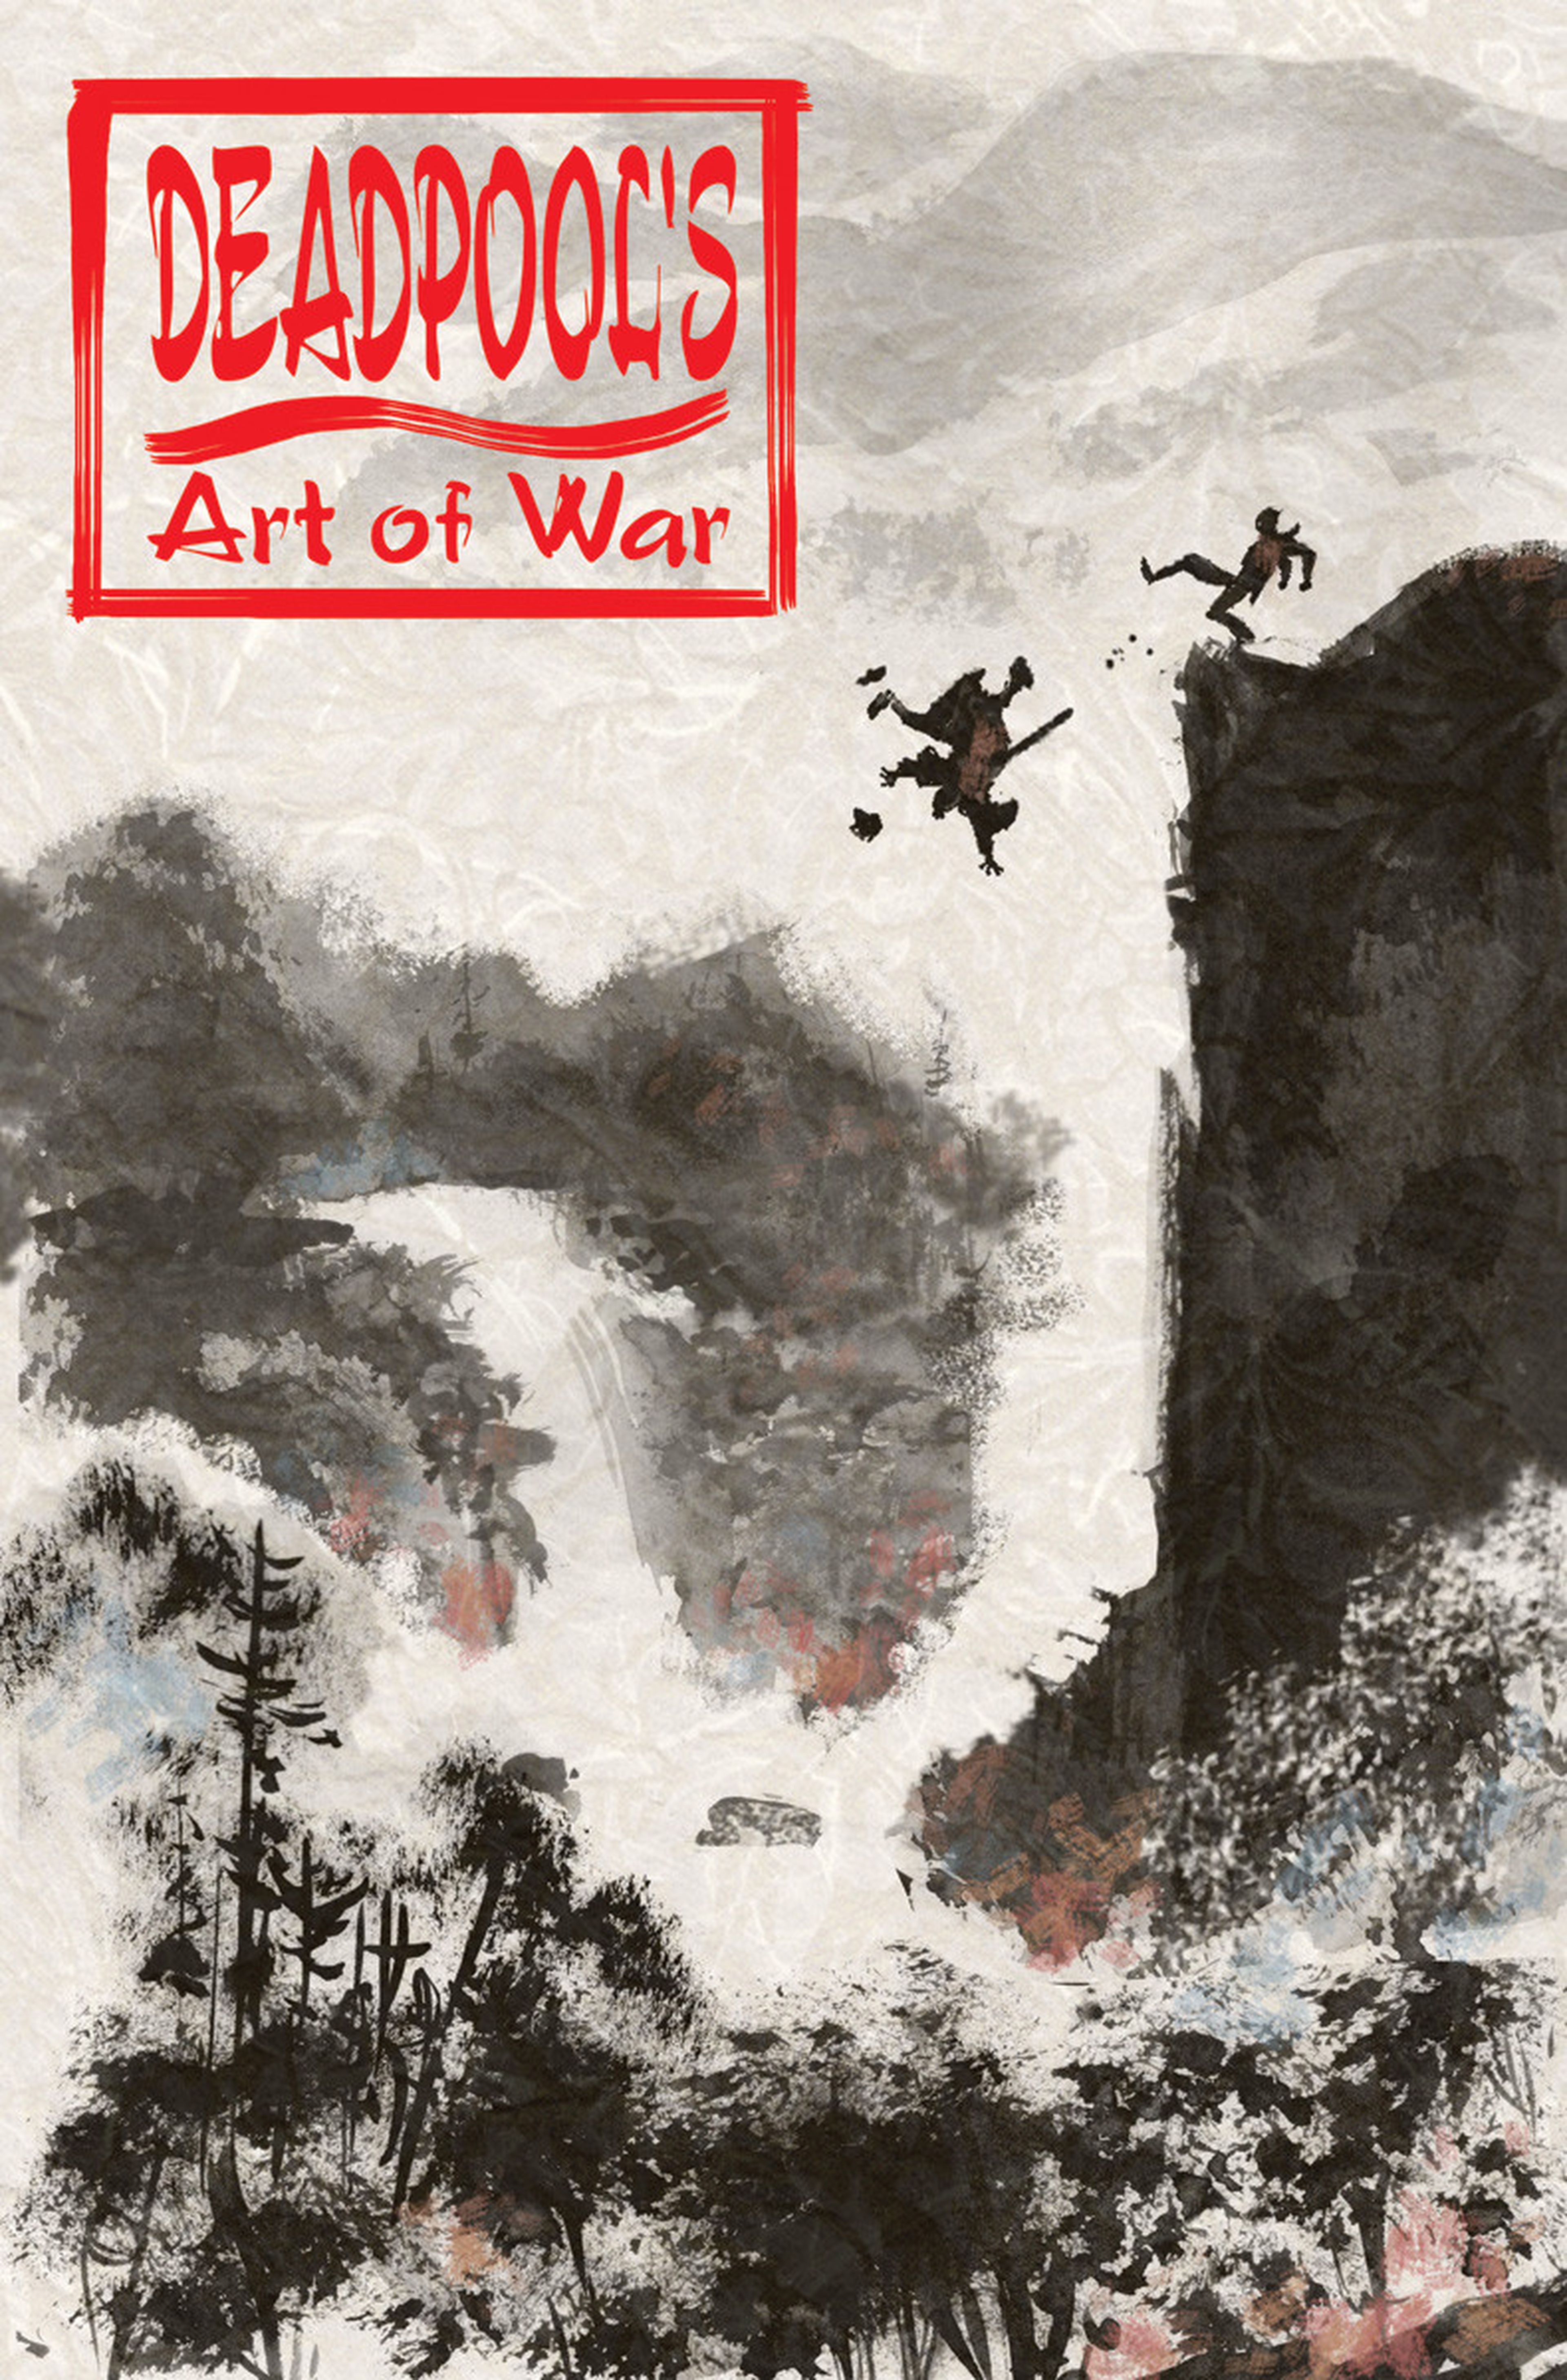 Masacre reescribirá El Arte de la Guerra